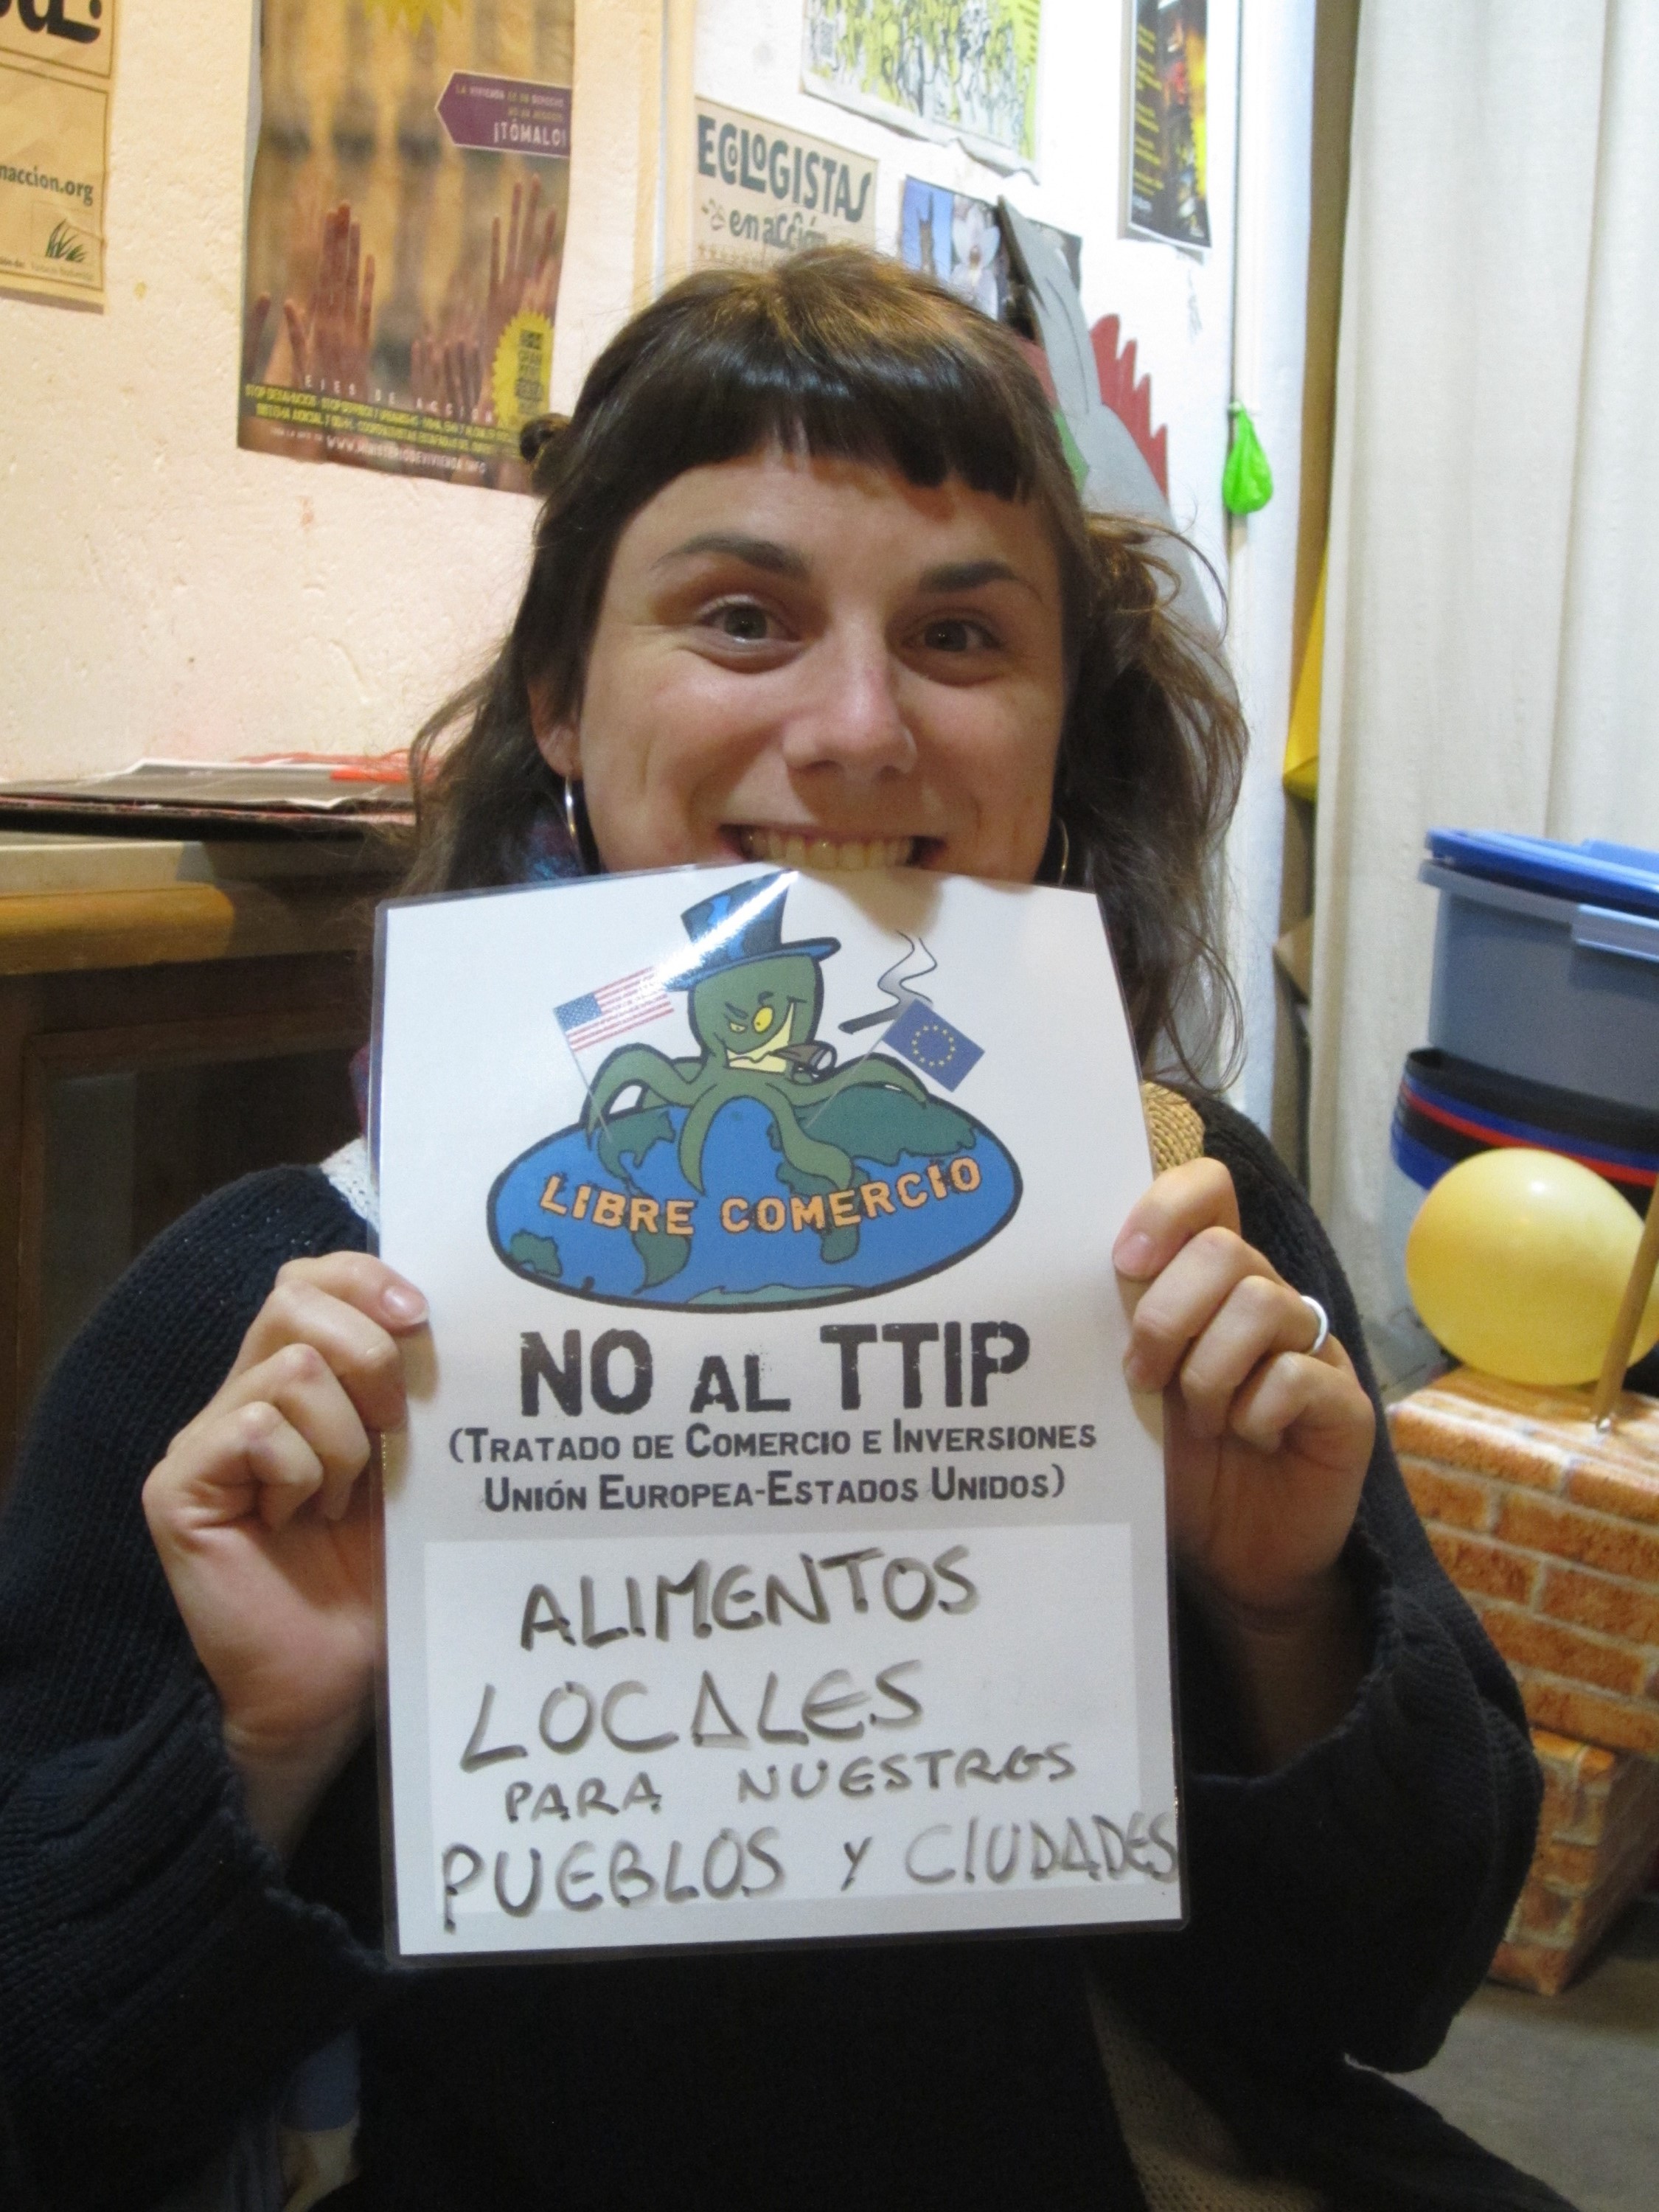 "Alimentos locais para as nossas cidades e cidadãos". Poster usado na acção contra o TTIP. (CC BY-SA 2.0)